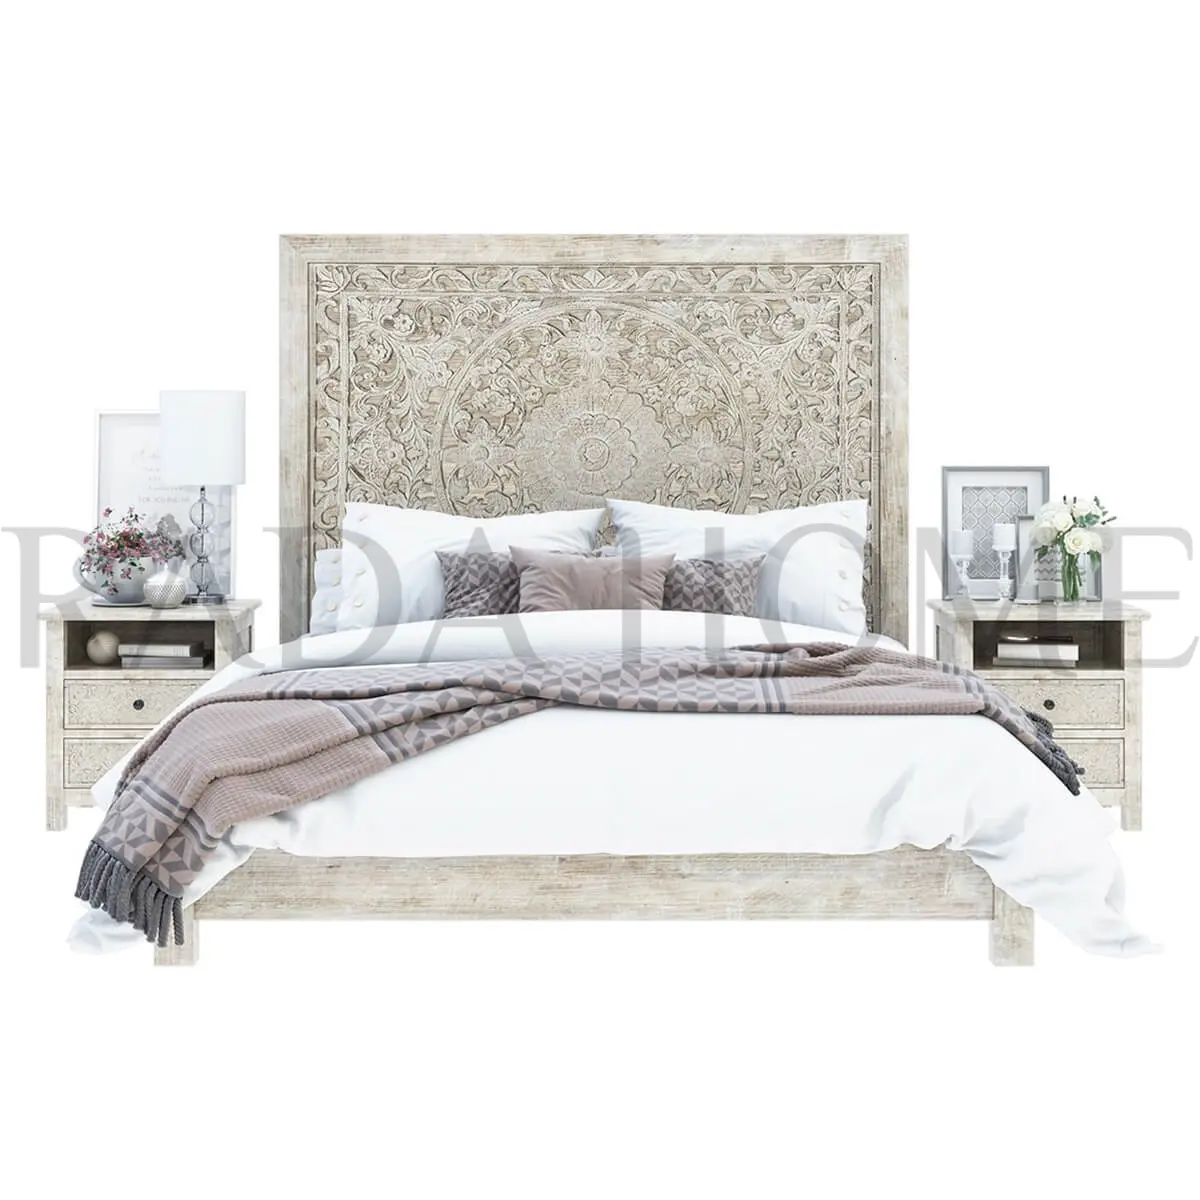 हाथ से तैयार की जाती पारंपरिक ठोस लकड़ी प्रीमियम बेडरूम सेट देहाती आधुनिक शैली आकर्षक भंडारण मंच बिस्तर